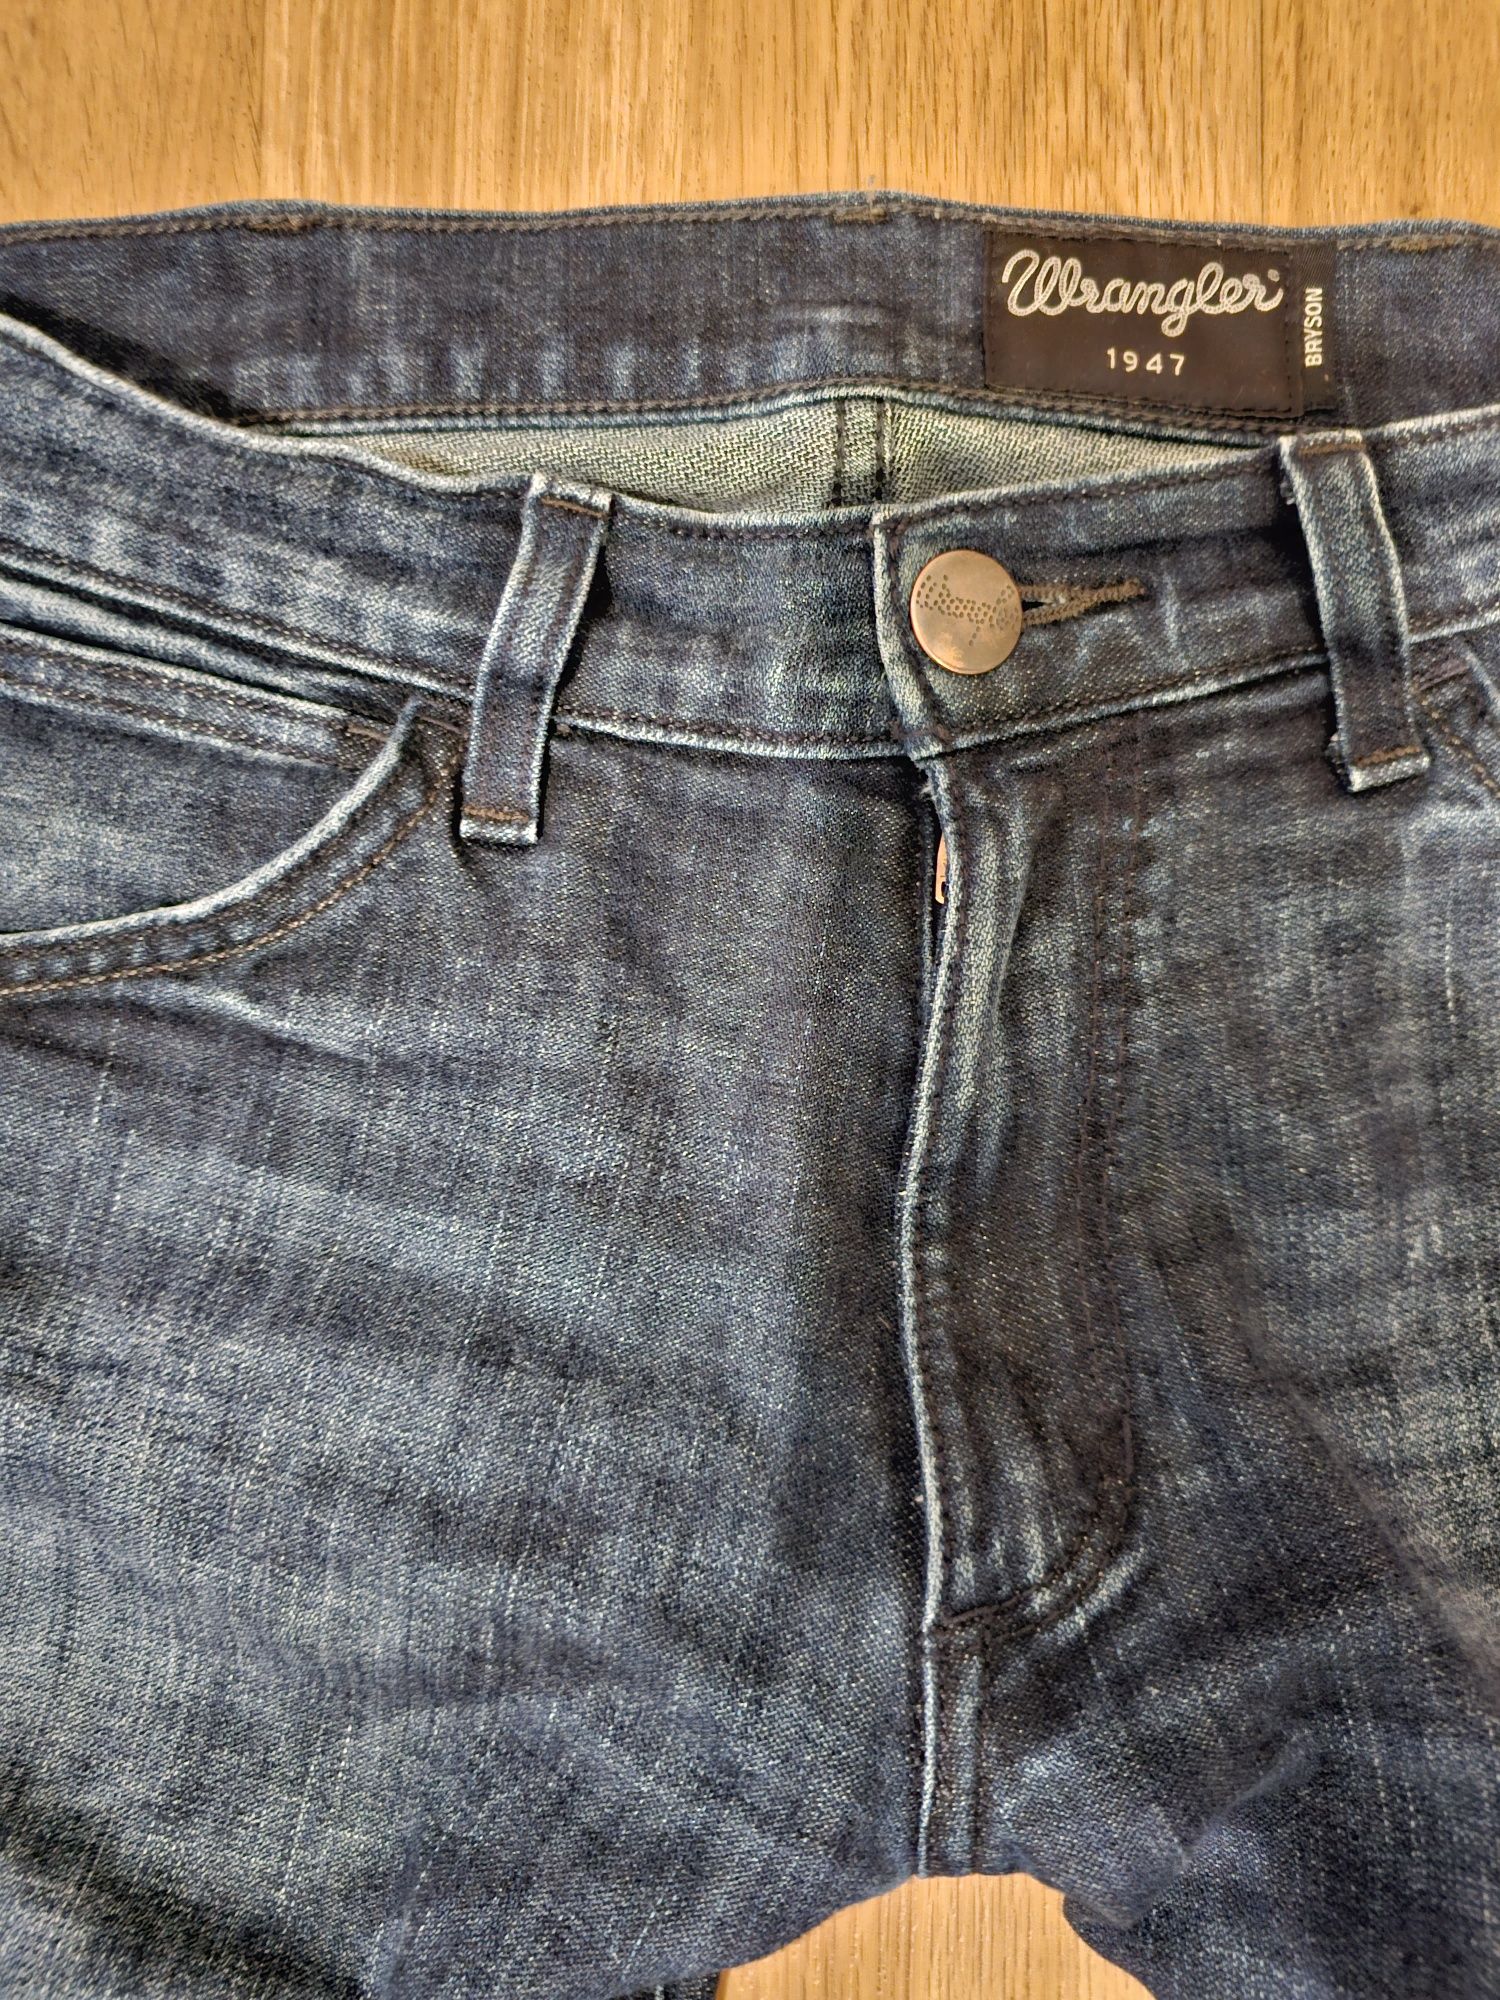 Spodnie jeans Wrangler Bryson skinny fit slim rurki W28 L32